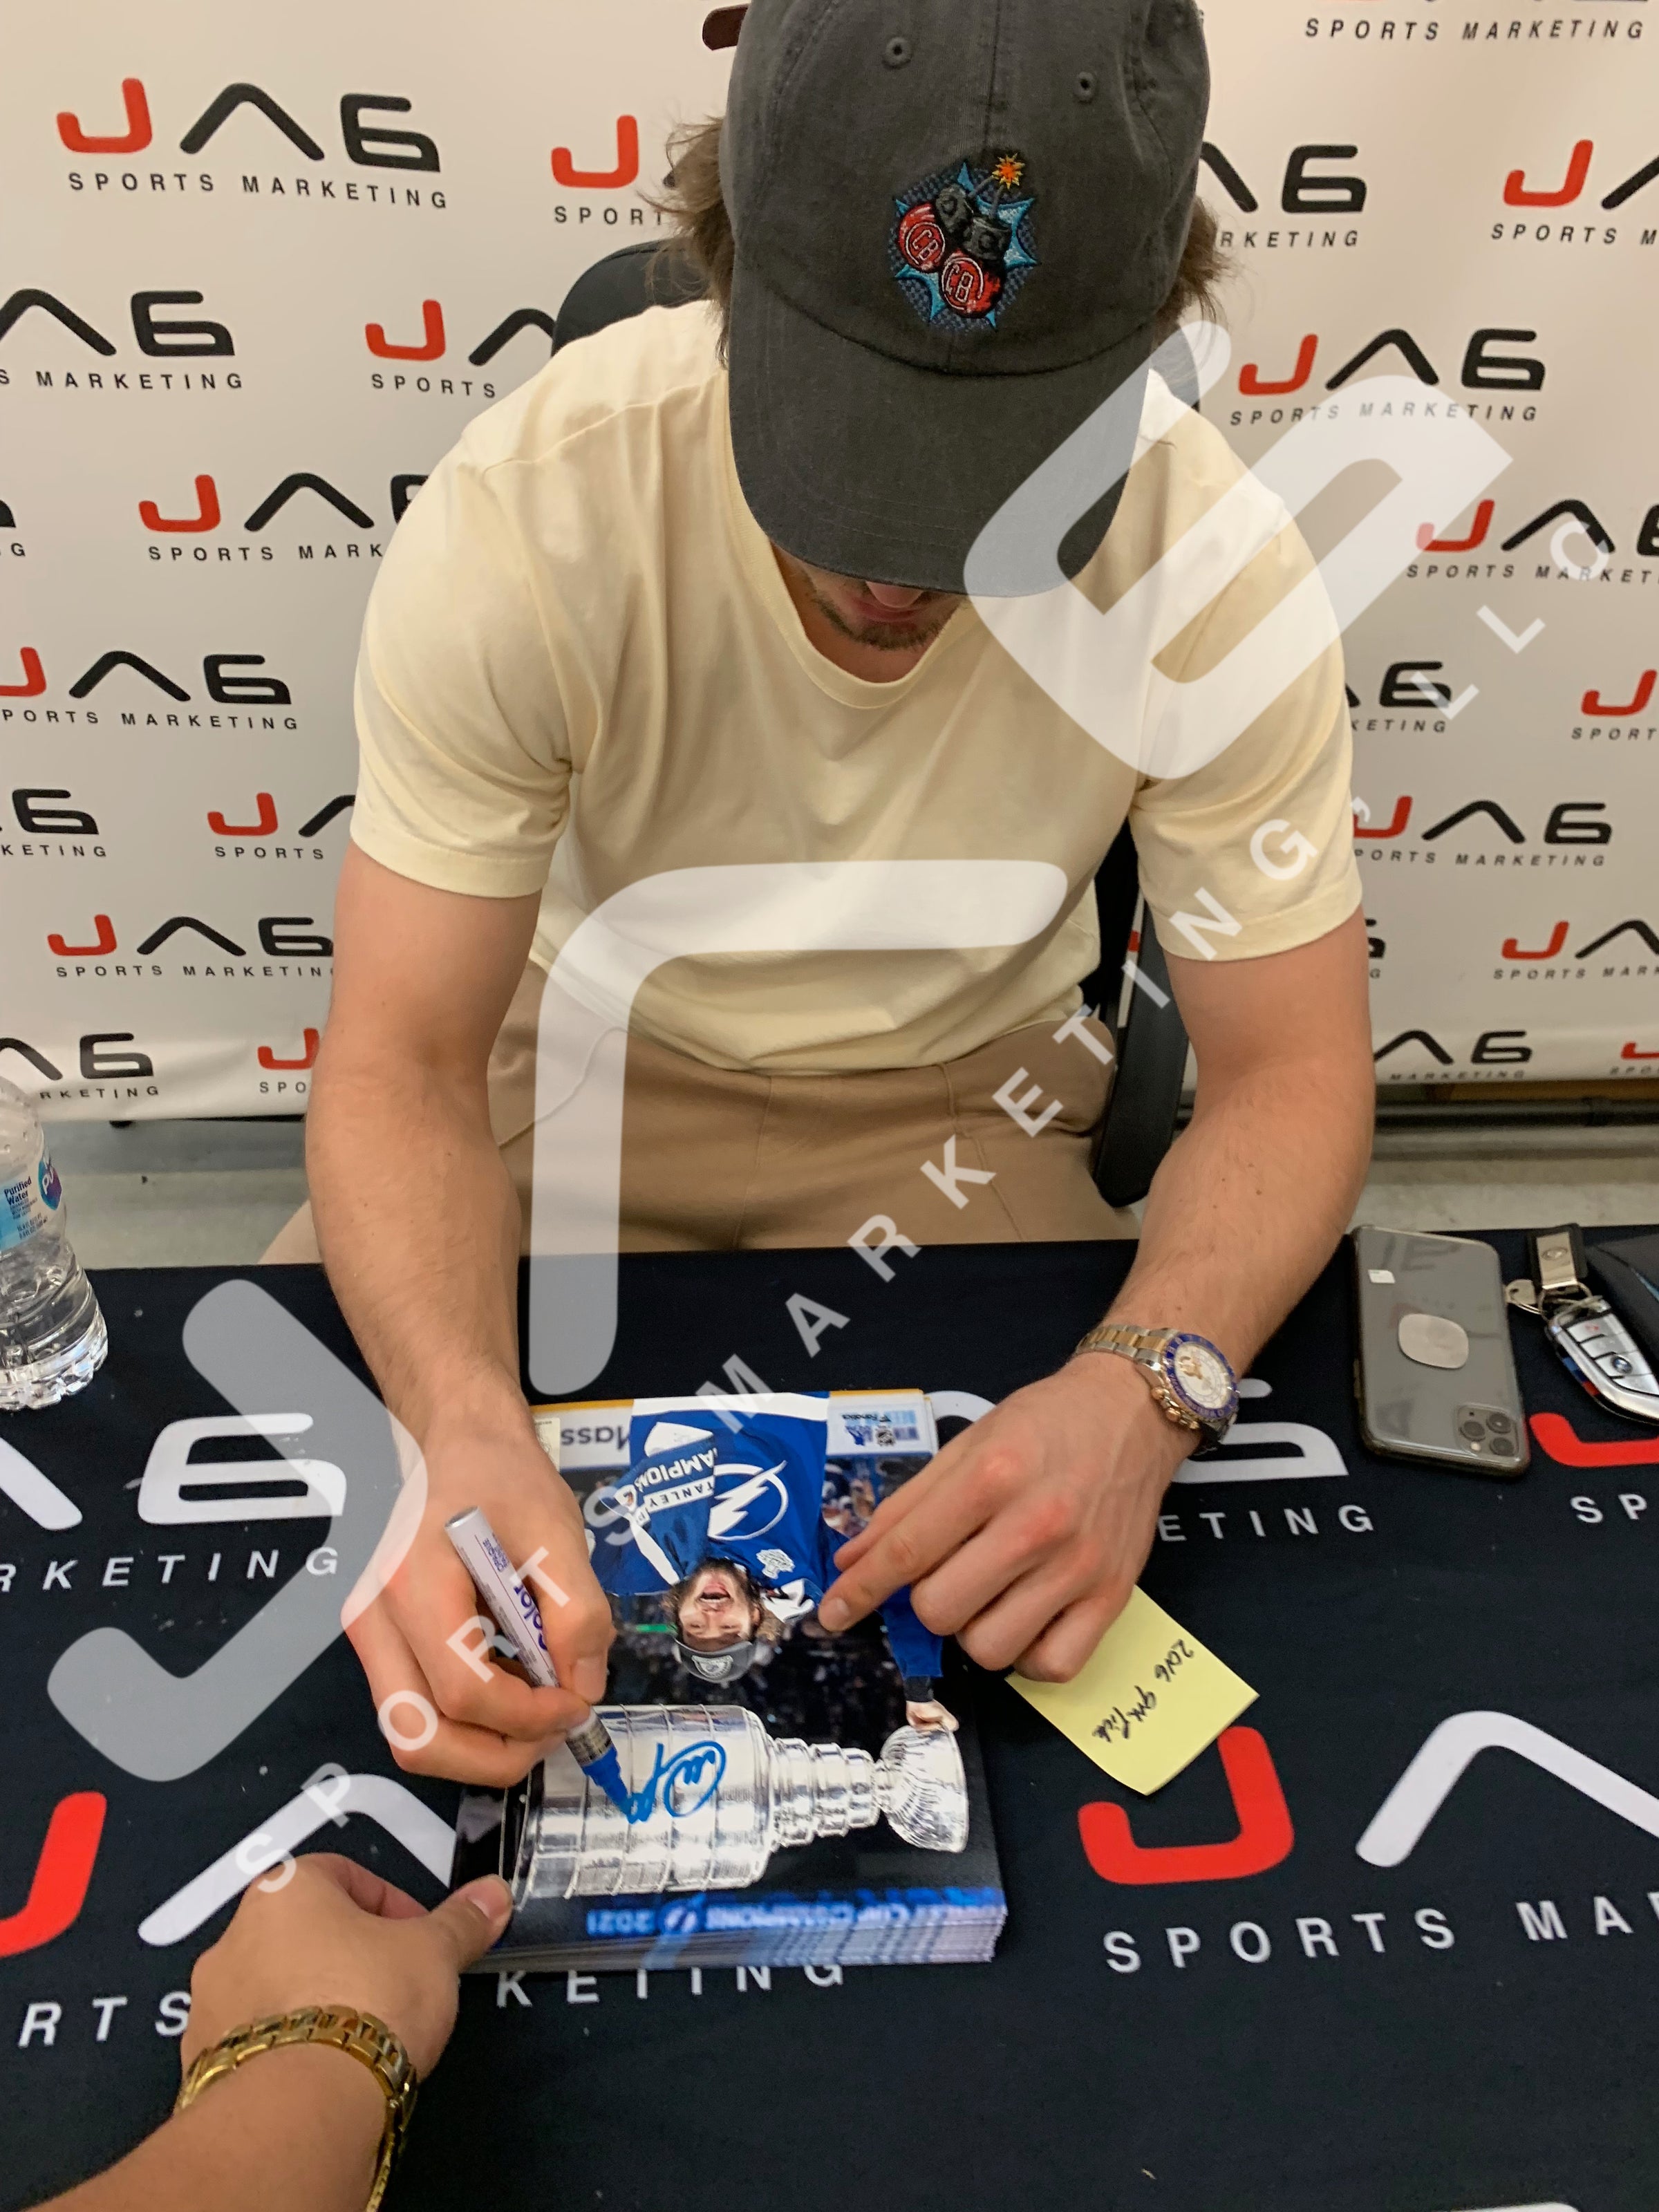 Mikhail Sergachev autographed signed jersey NHL Tampa Bay Lightning JSA COA